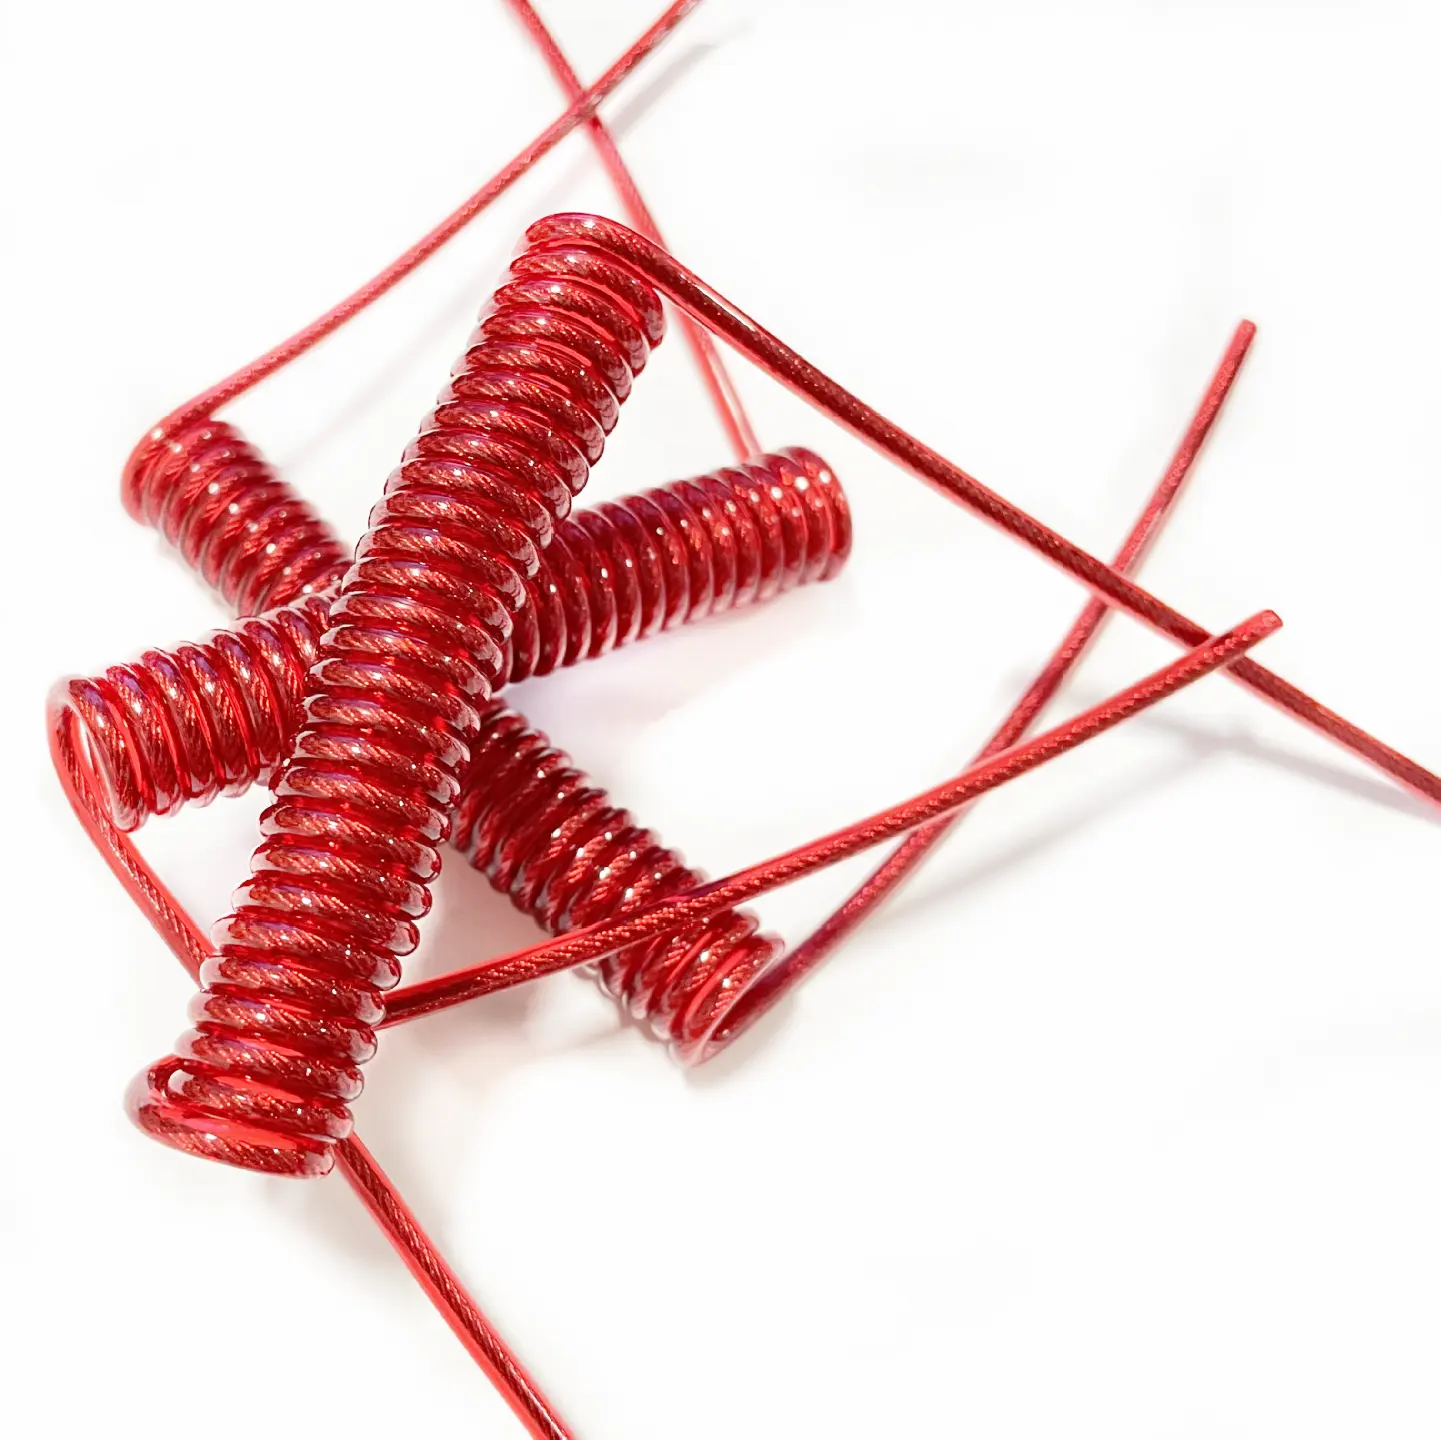 PU/PVC dekoratif Spiral kablo tel ile özelleştirilmiş boyut anahtarlık kordon renkli kırmızı parlak çelik bahar halat